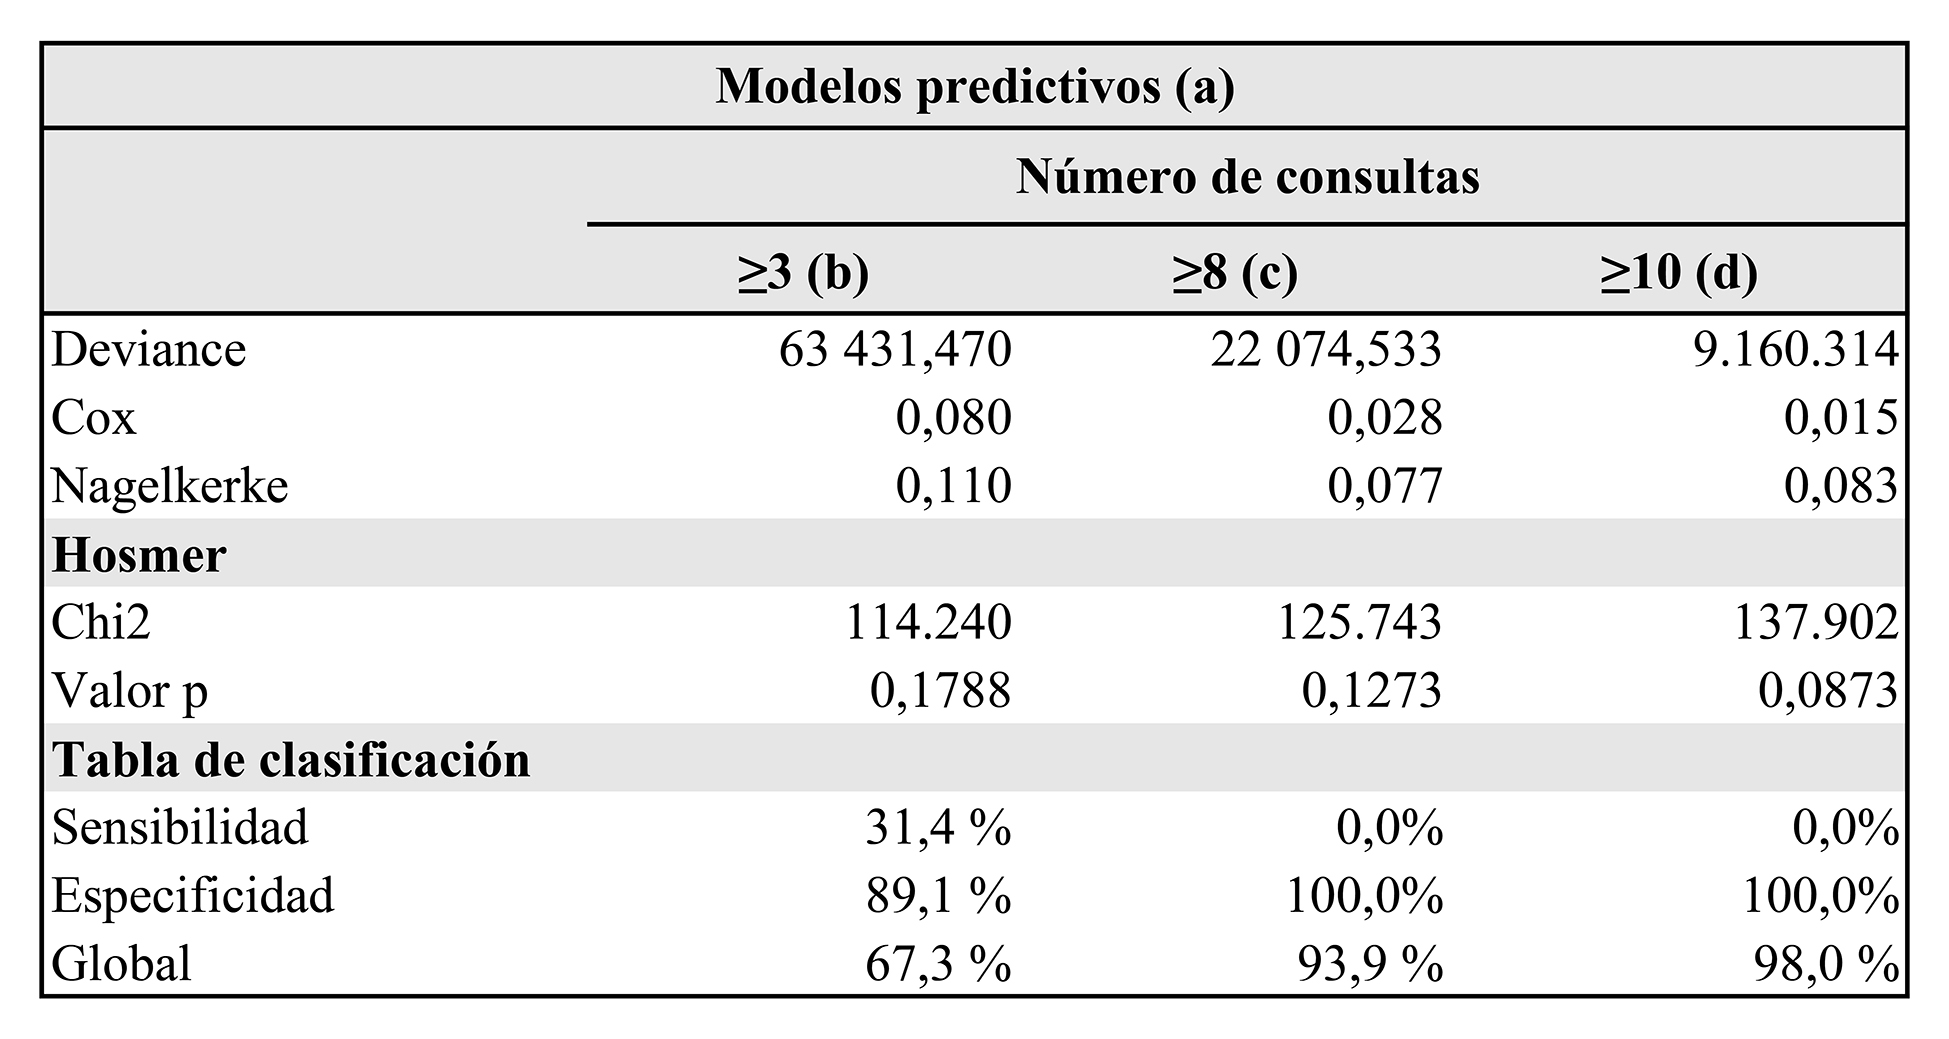 Diseño de modelos predictivos para la hiperfrecuentación ≥3, ≥8 y ≥10 consultas al año. Usuarios registrados en consulta médica en la Red de servicios de una EPS. Medellín, 2018